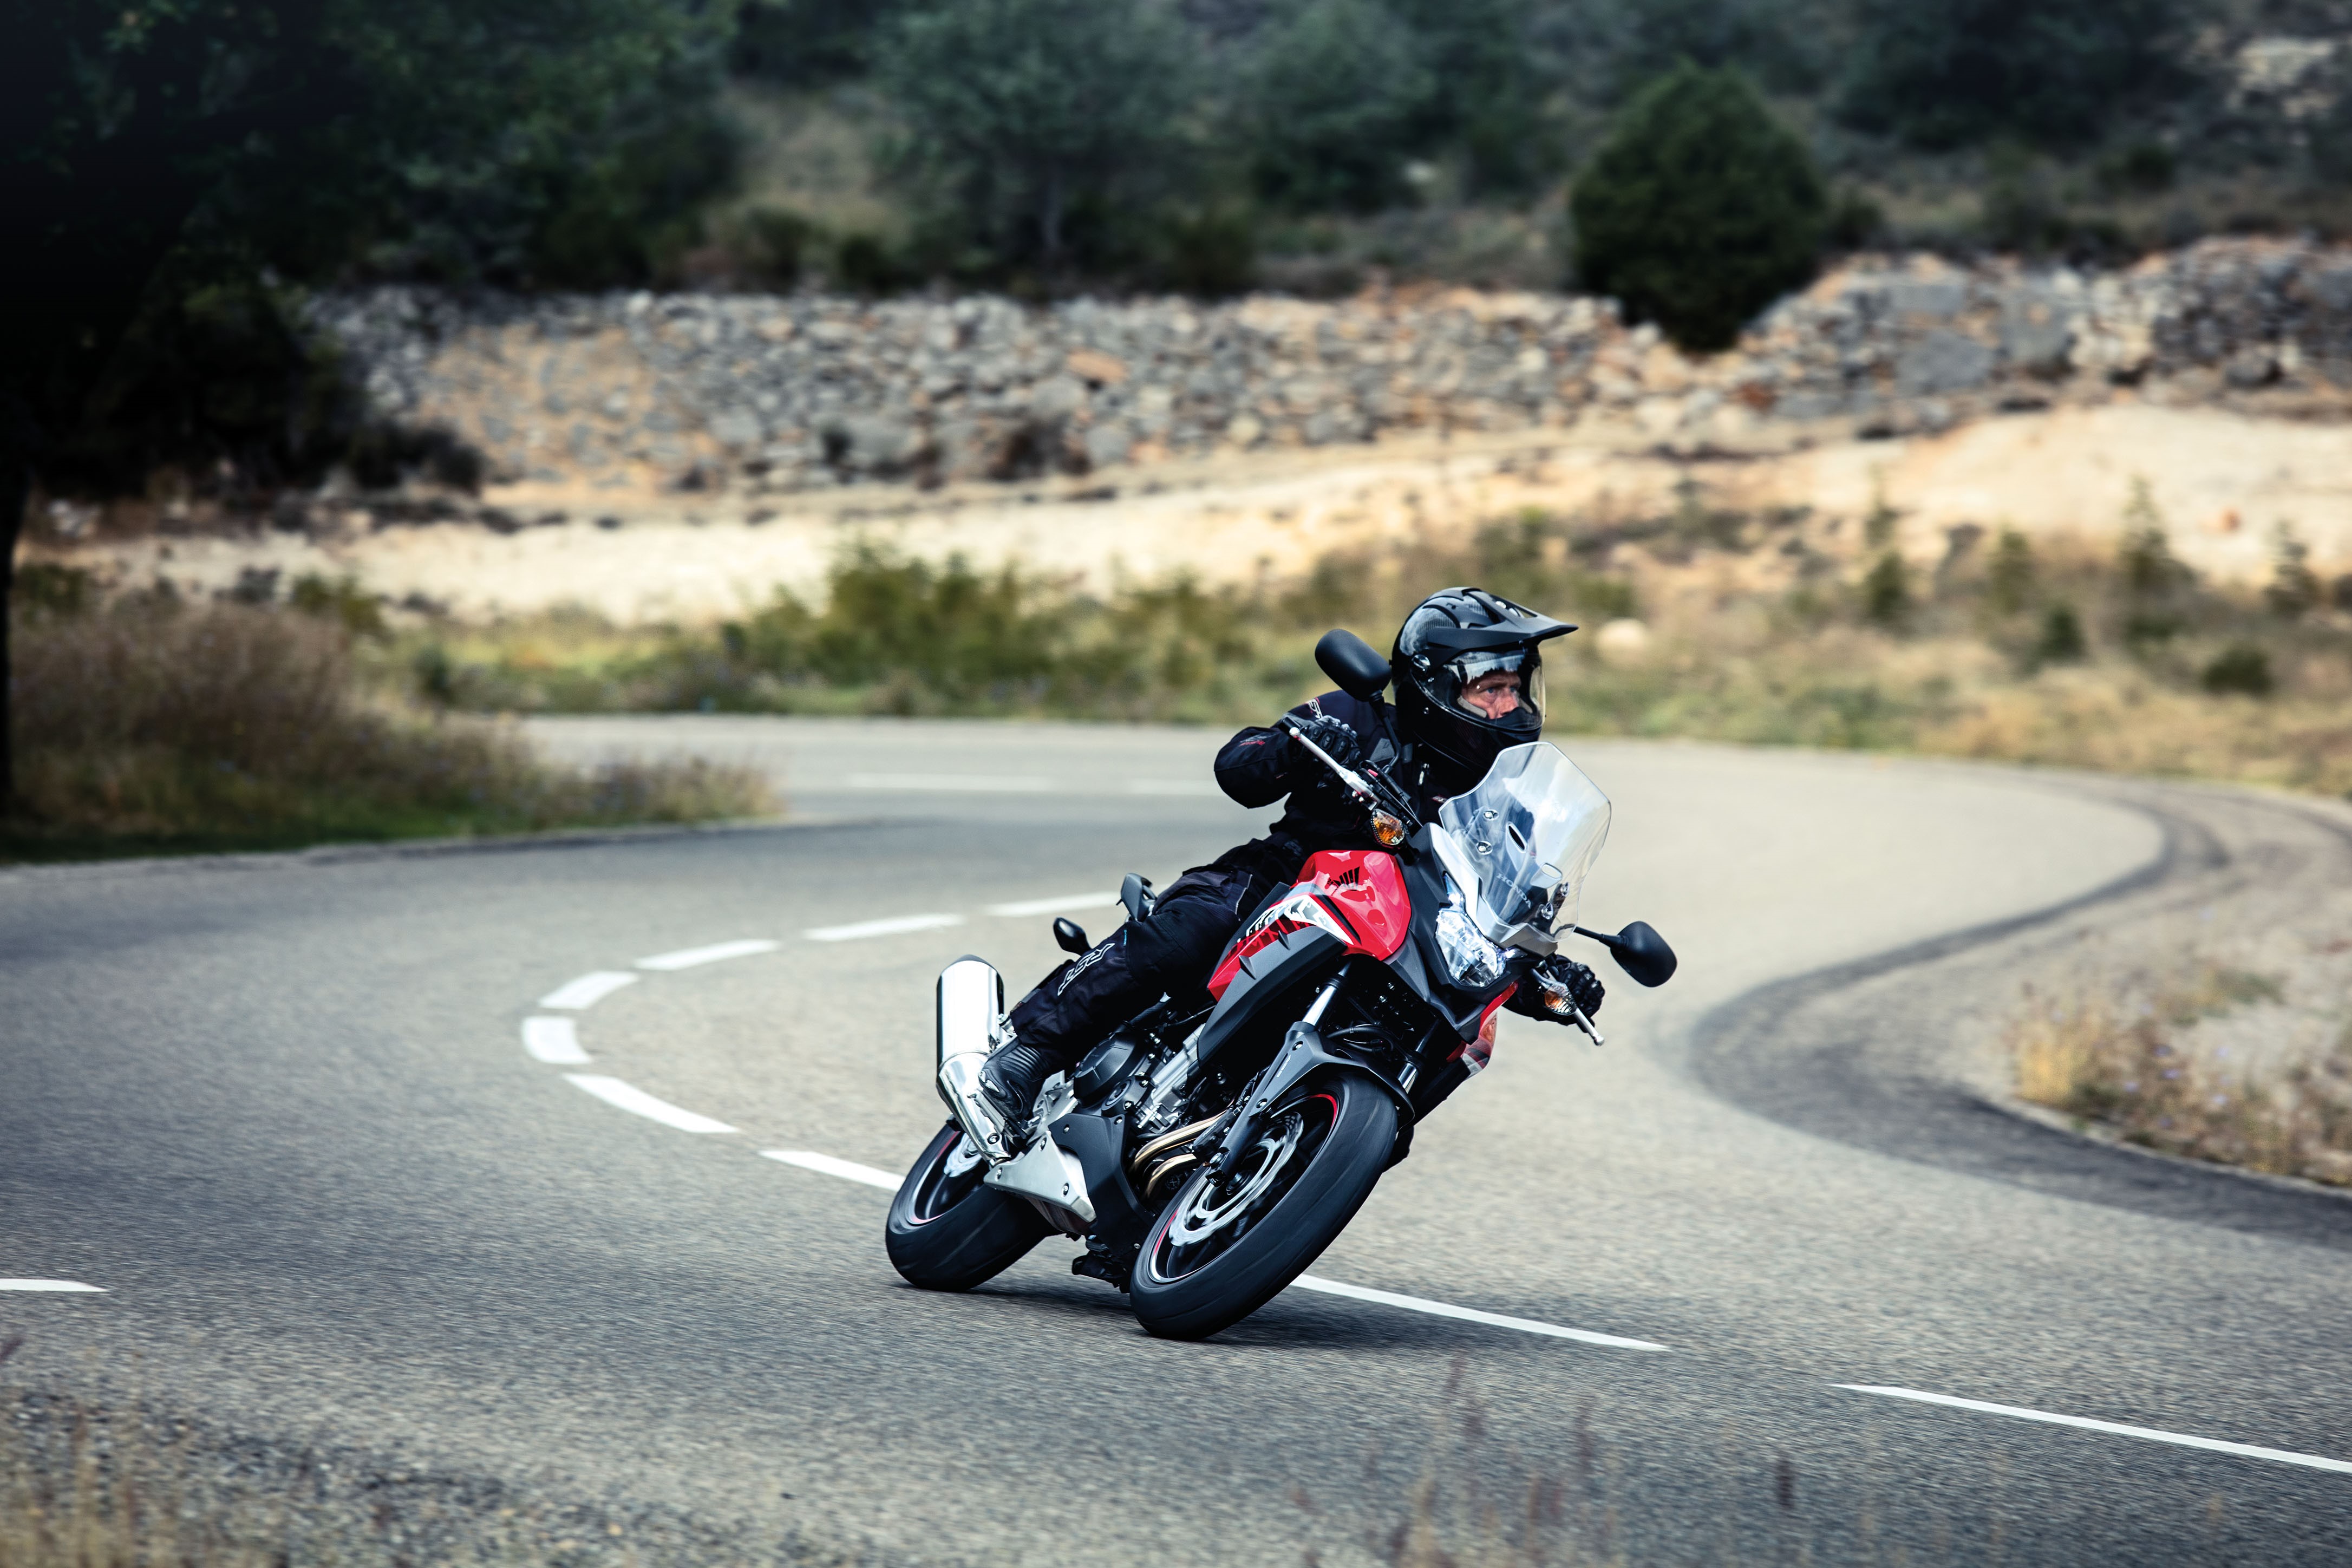 2016 Honda CB500X revealed